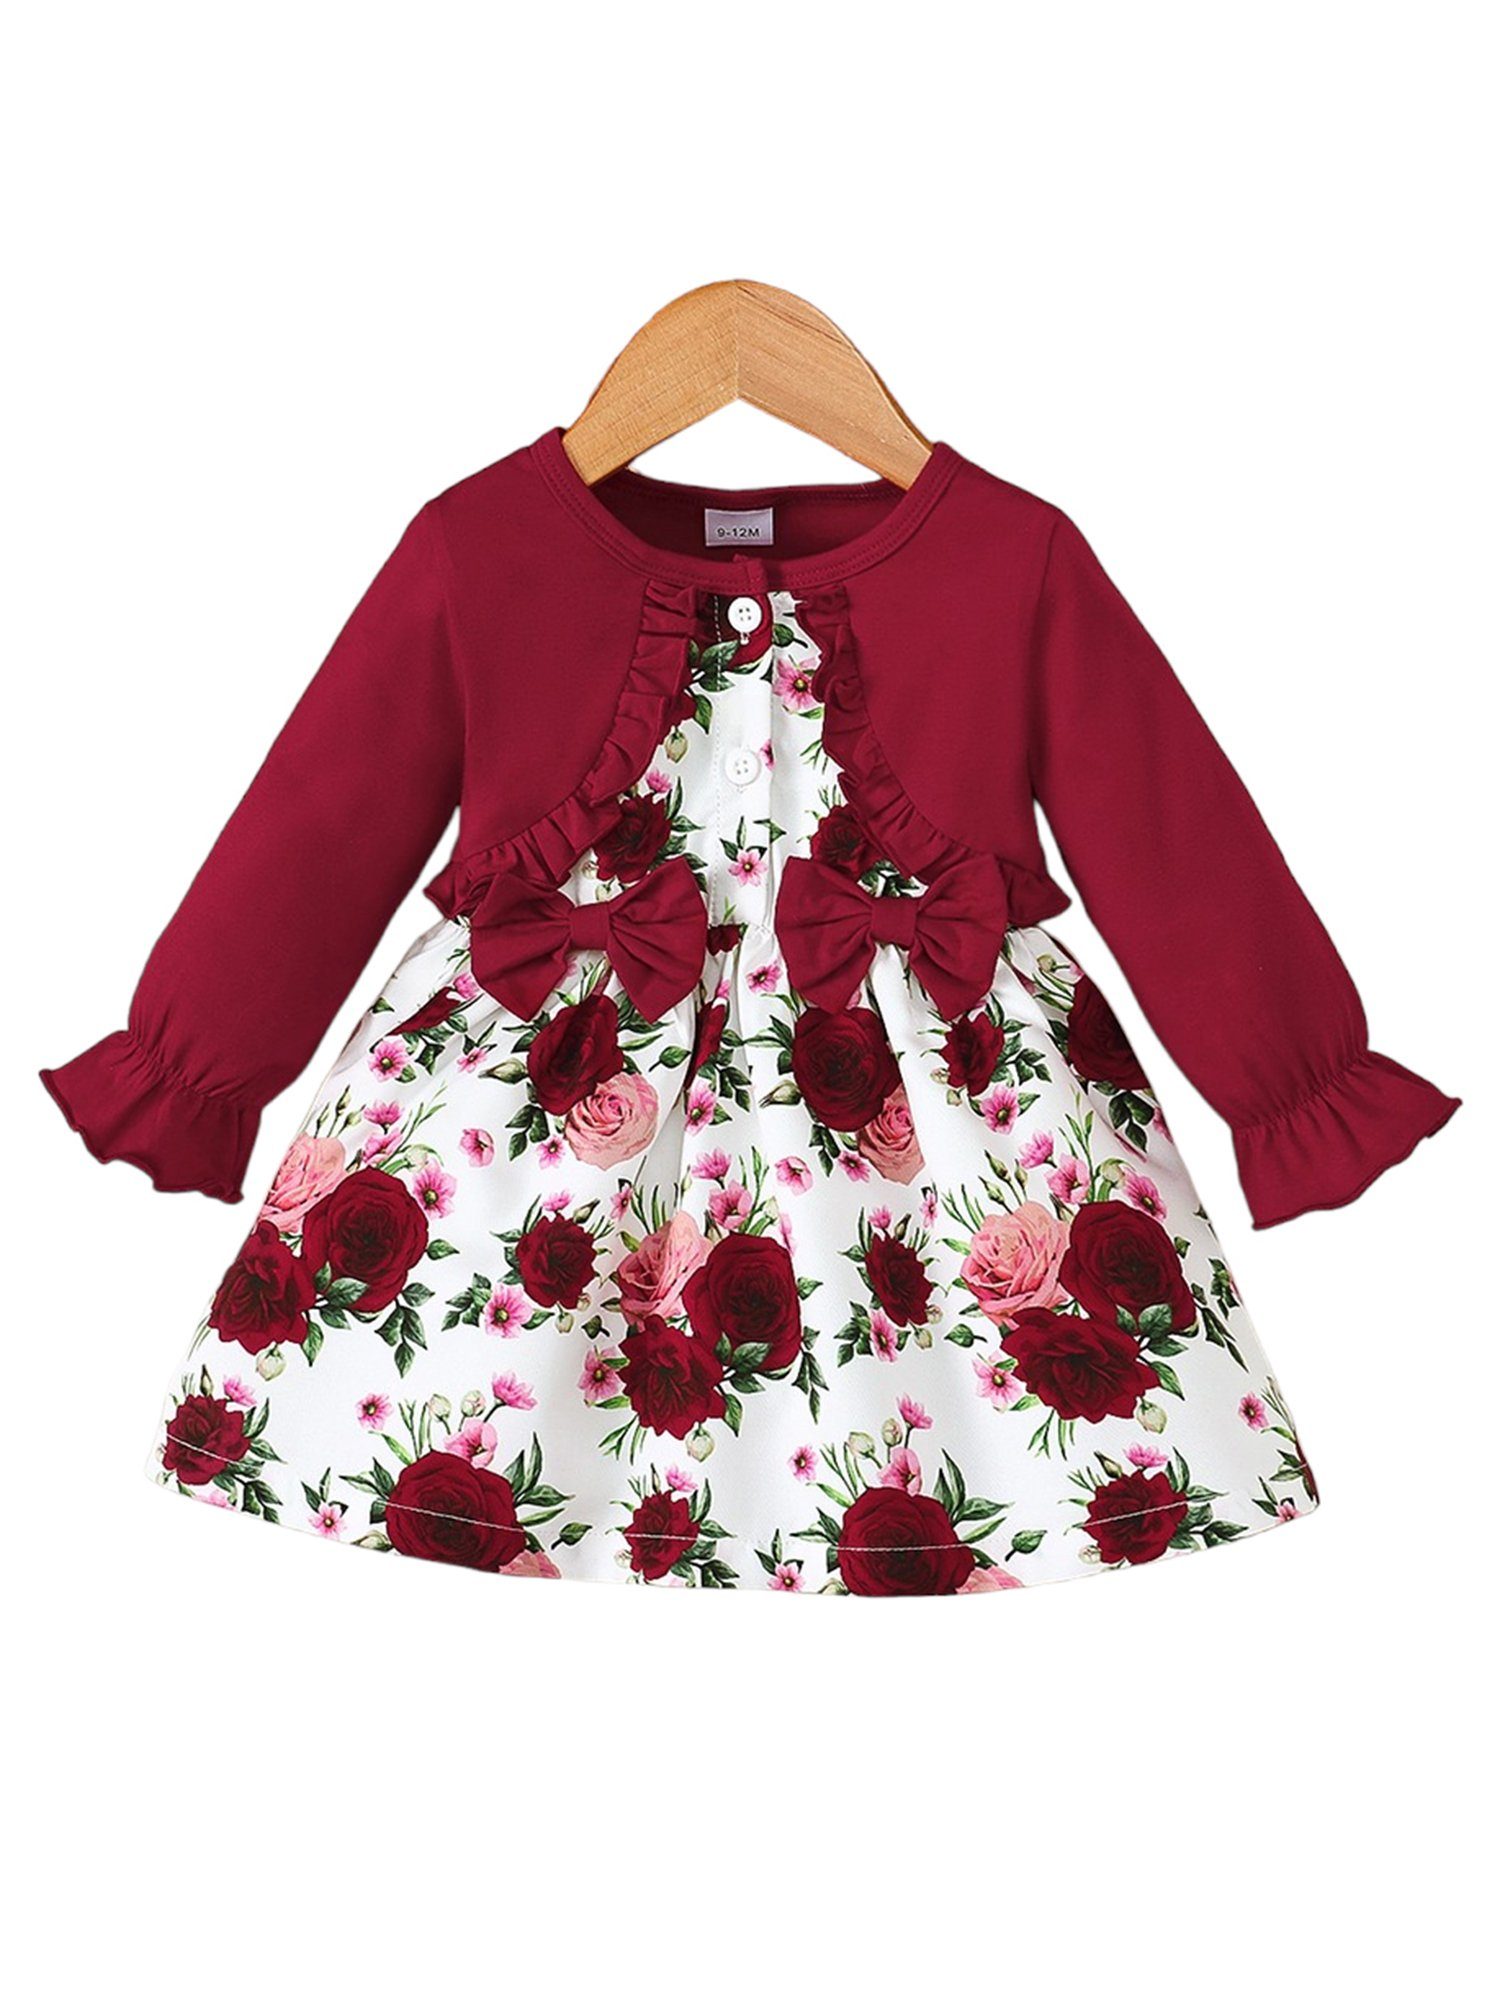 LAPA Druckkleid Mädchen Langärmliges Kleid mit Blumendruck und Rüschen, 1 Stück